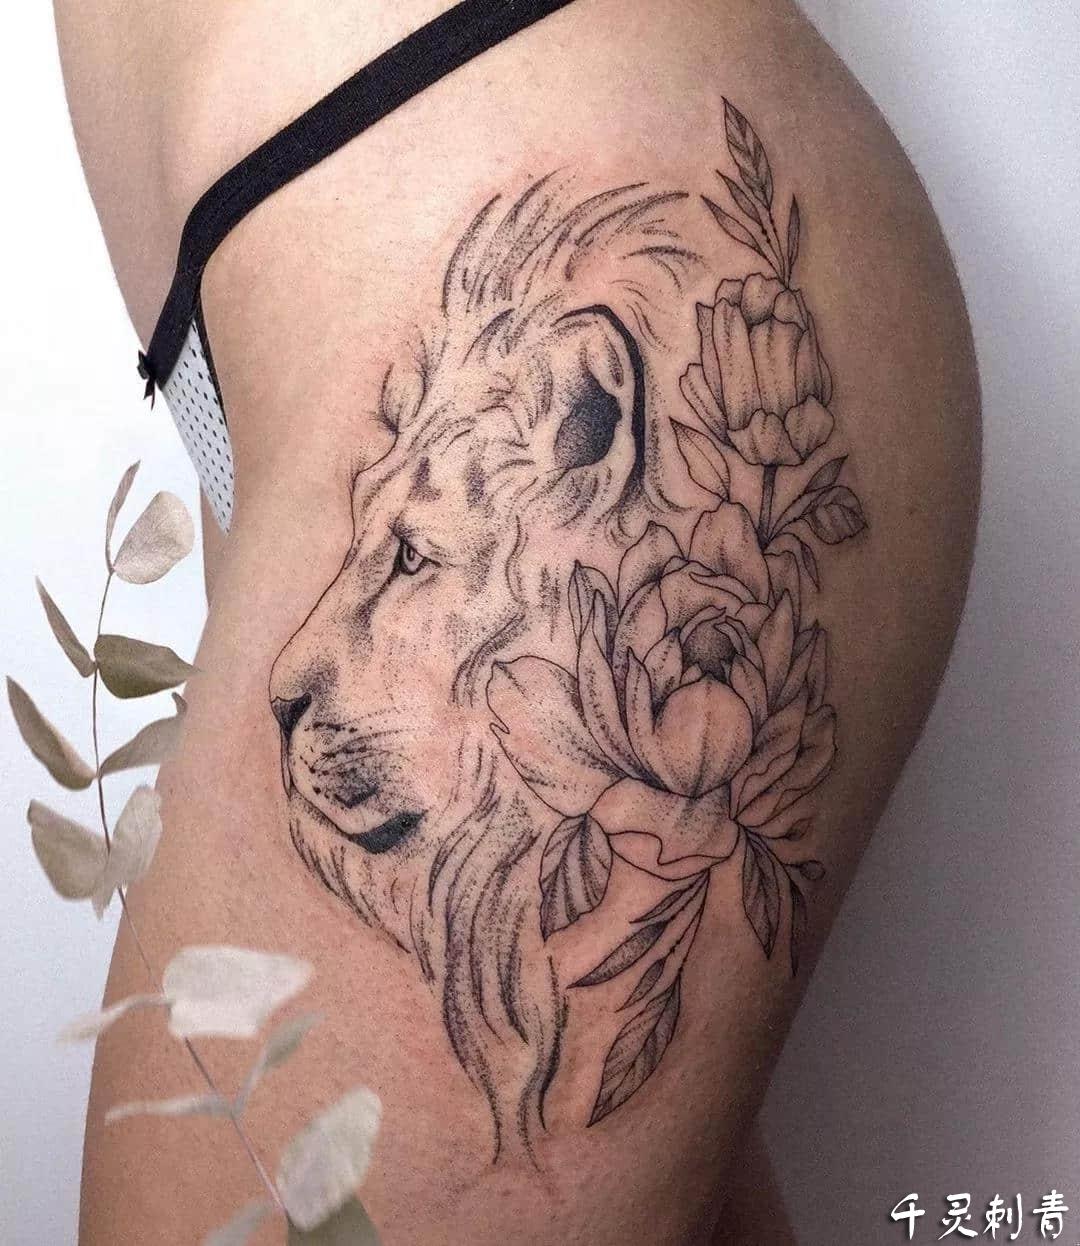 胯部狮子纹身手稿图案